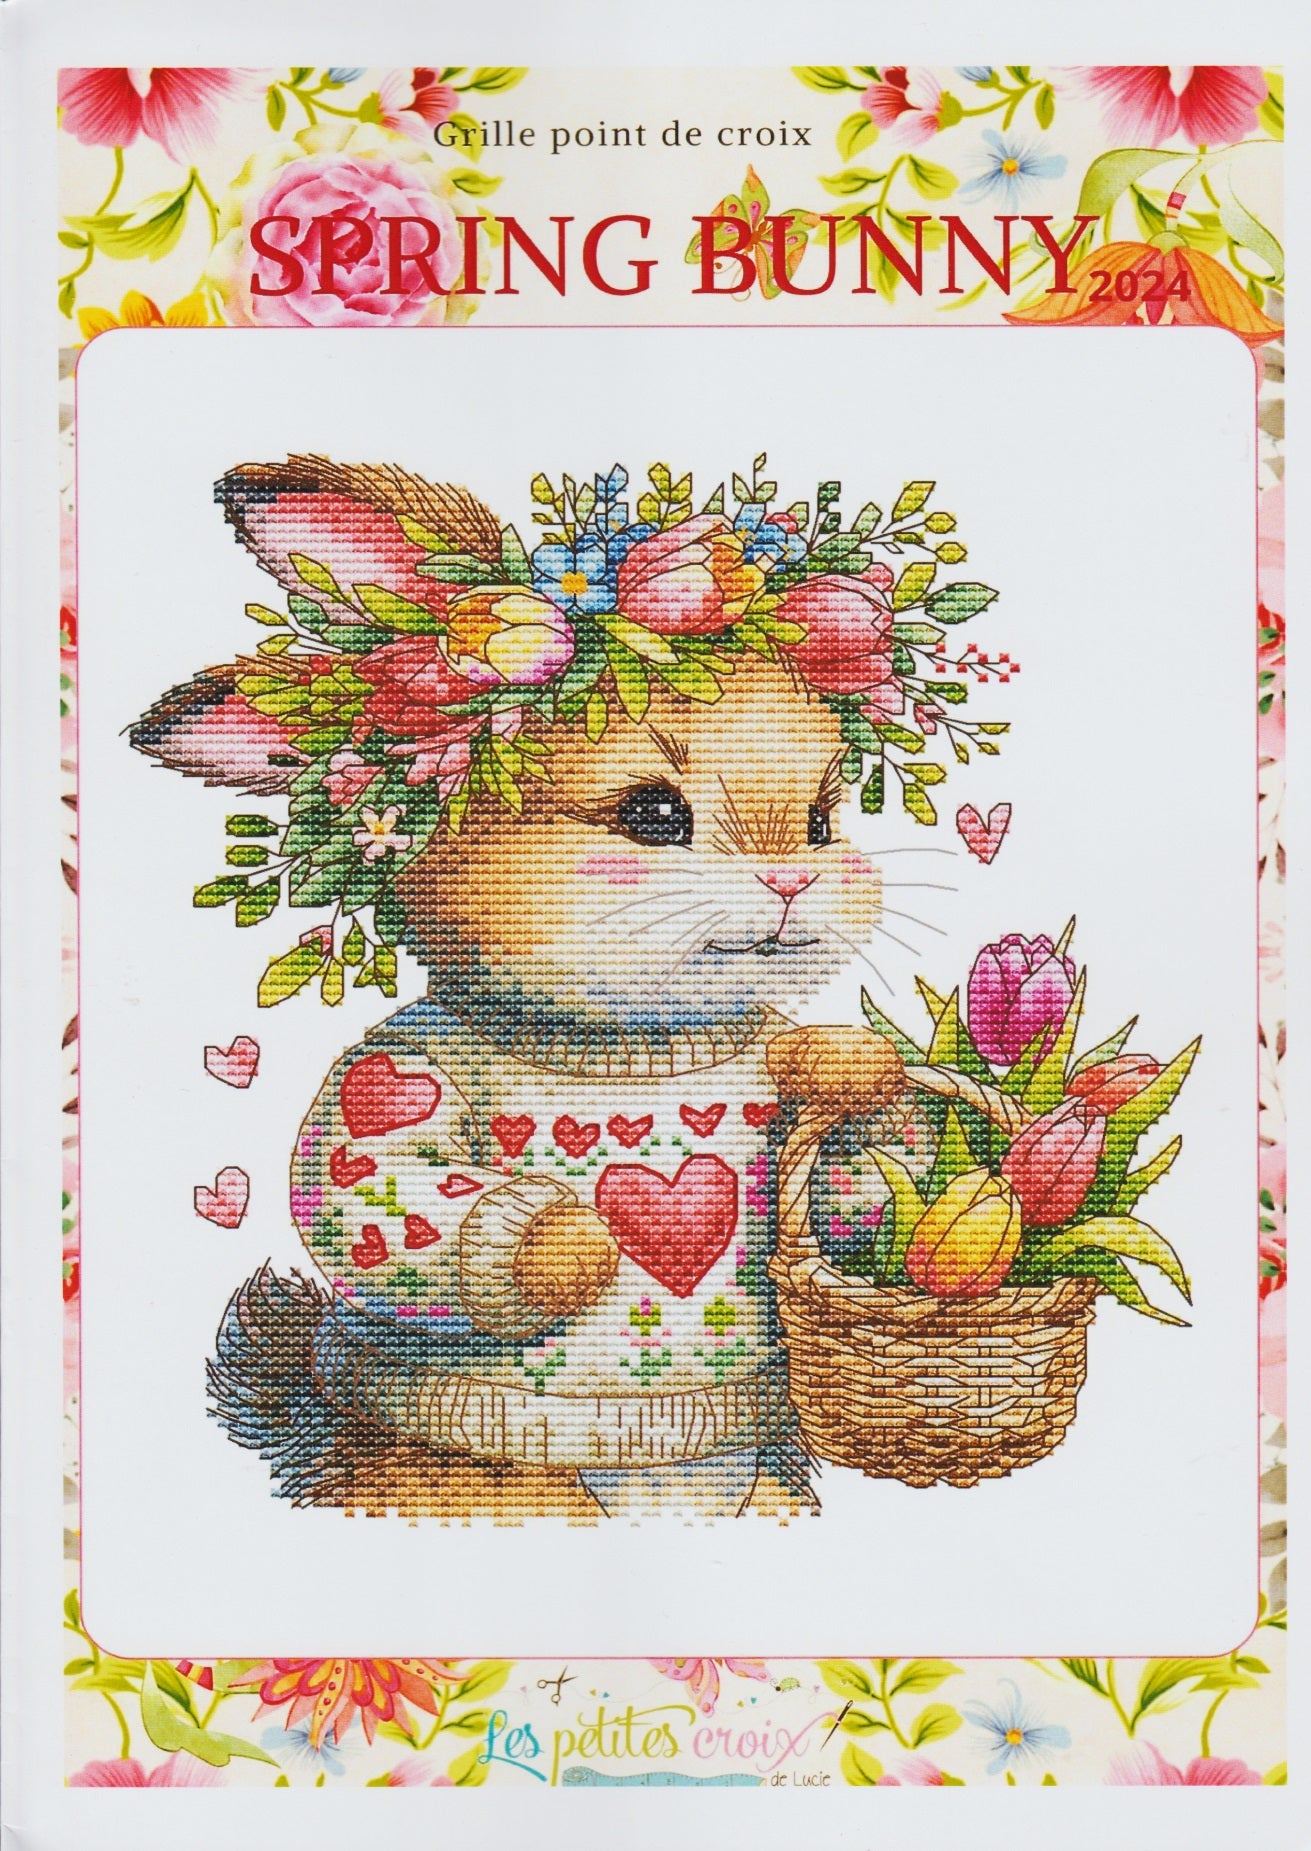 Les Petites Croix de Lucie Spring Bunny cross stitch easter pattern